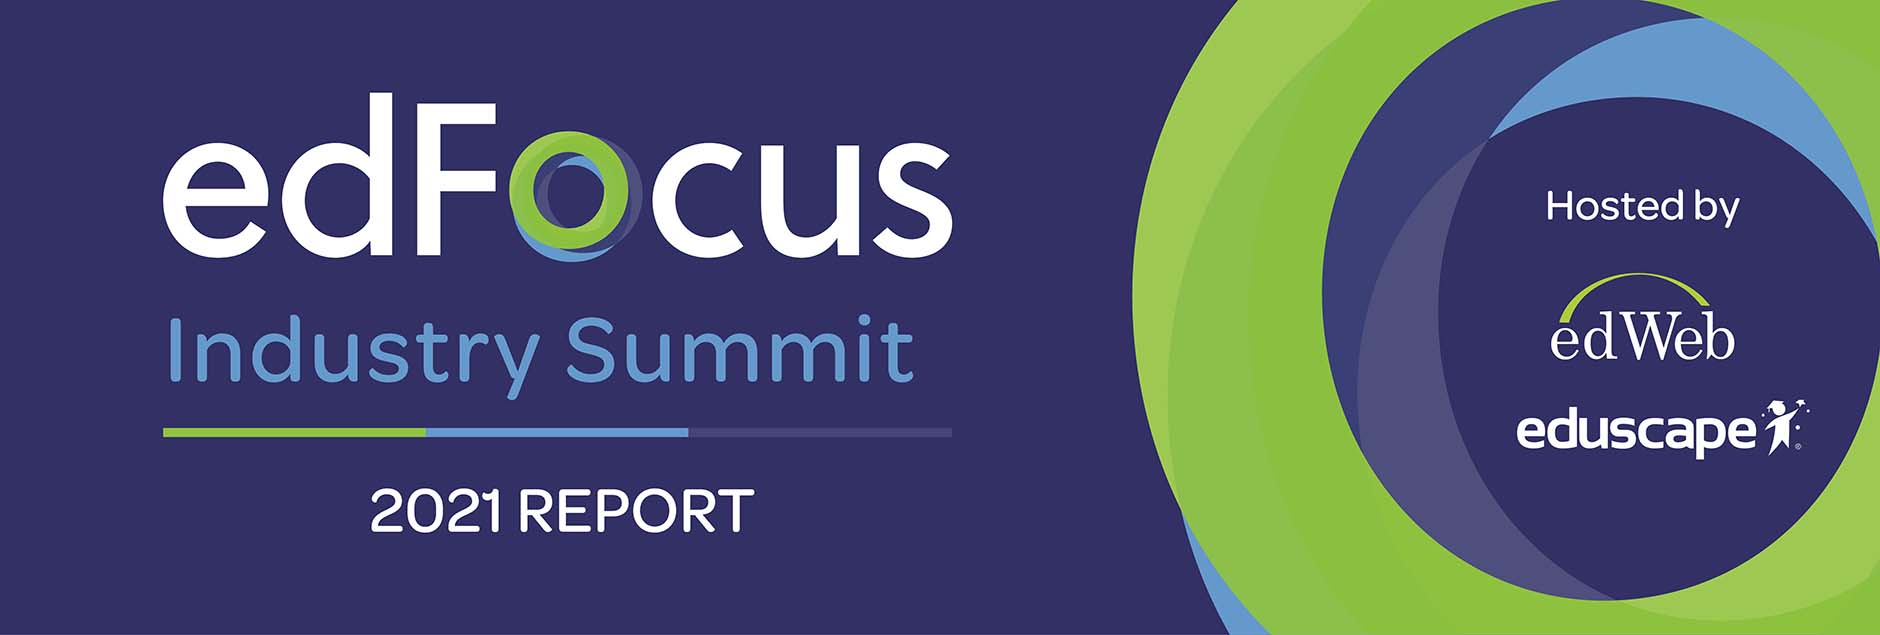 edFocus Industry Summit 2021 Report